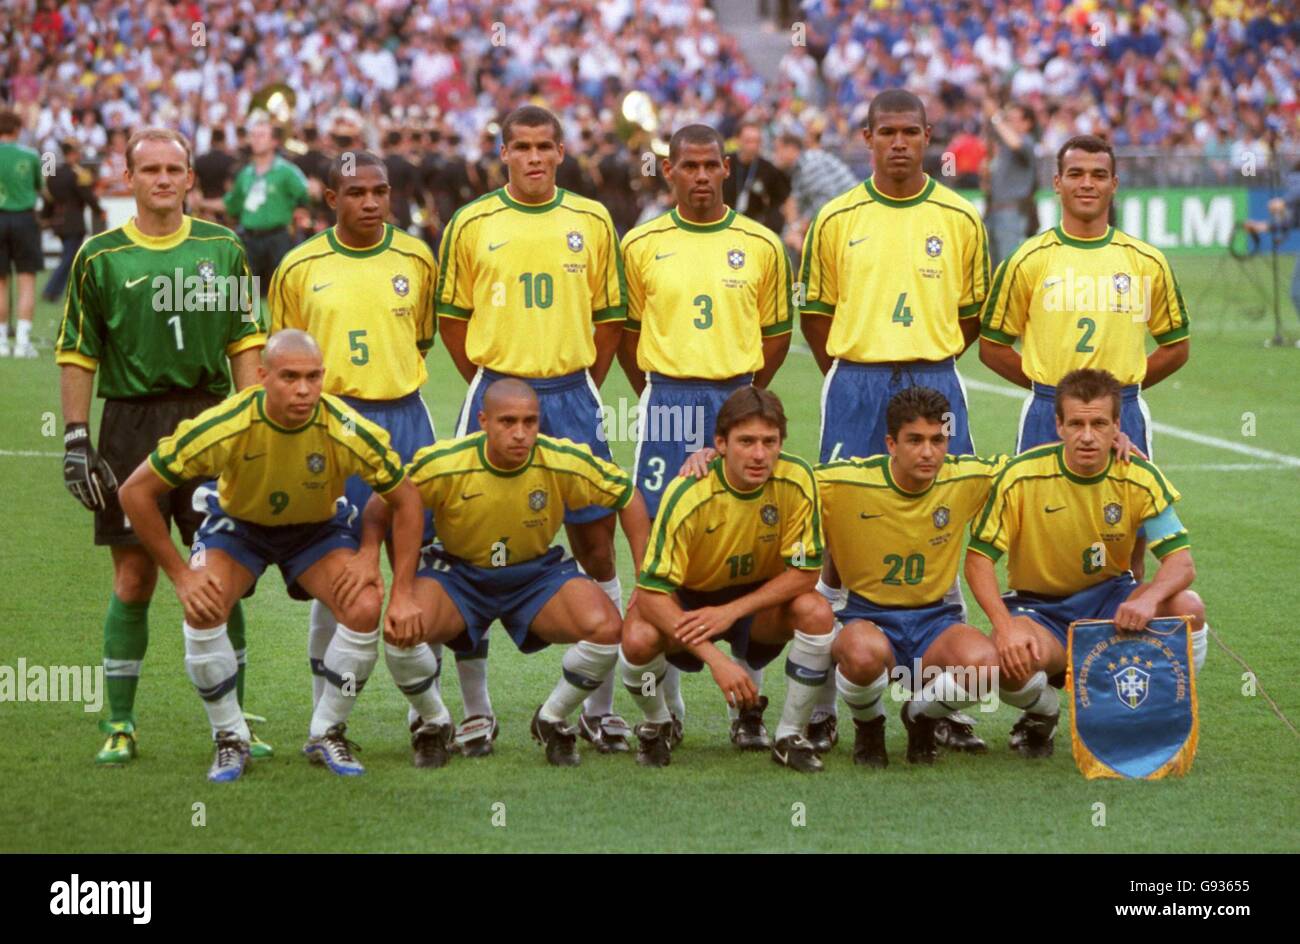 Soccer - World Cup France 98 - Final - Brazil v France. Brazil team group  Stock Photo - Alamy